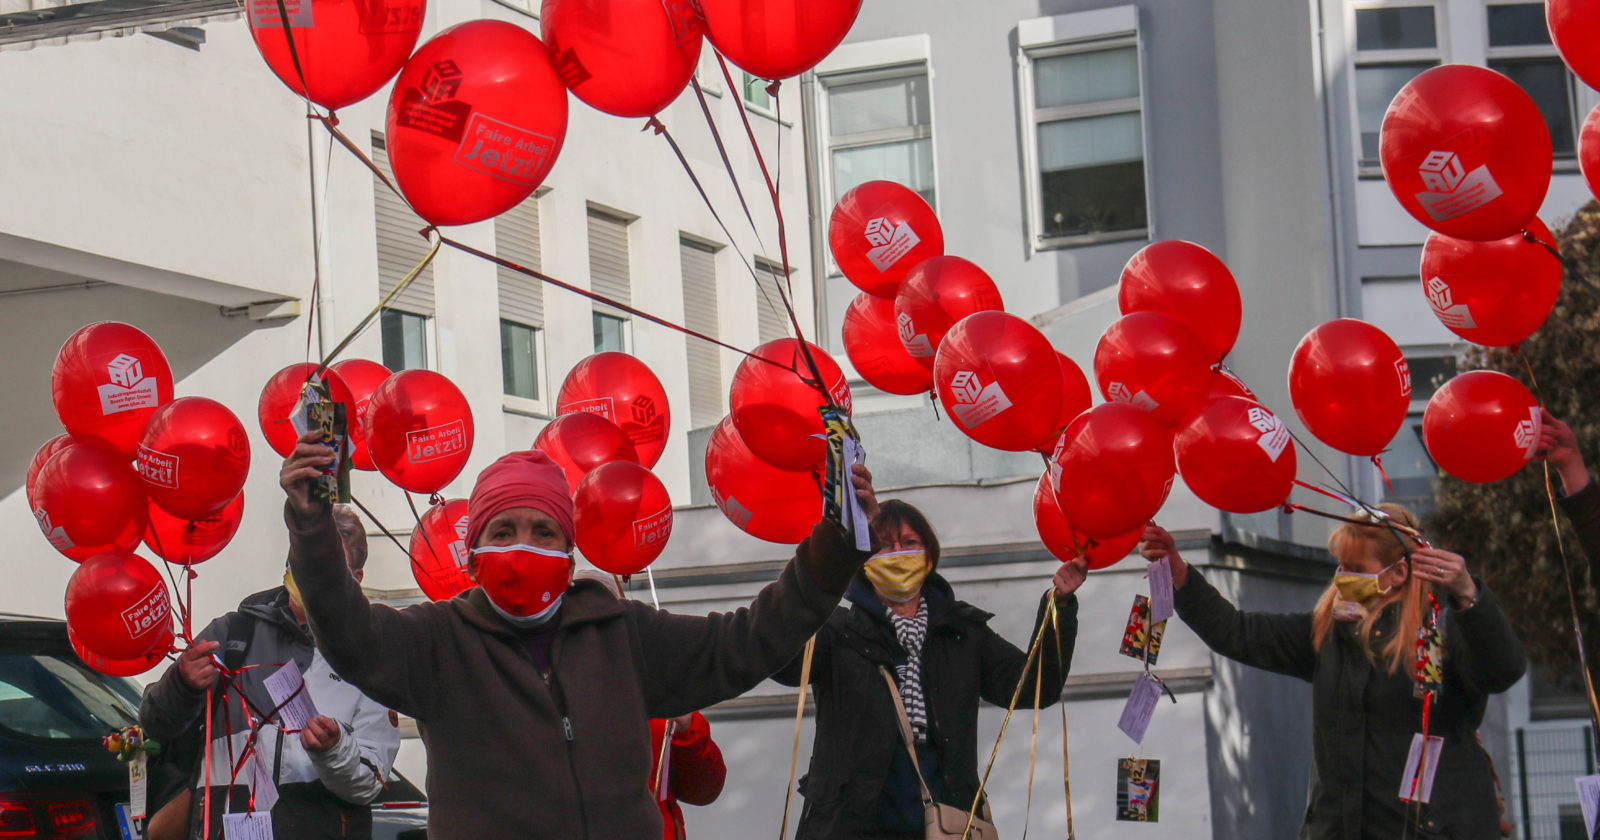 99 Luftballons für 12 Euro. GebäudereinigerInnen aus dem Rheinland unterstützen IG BAU Tarifkommission